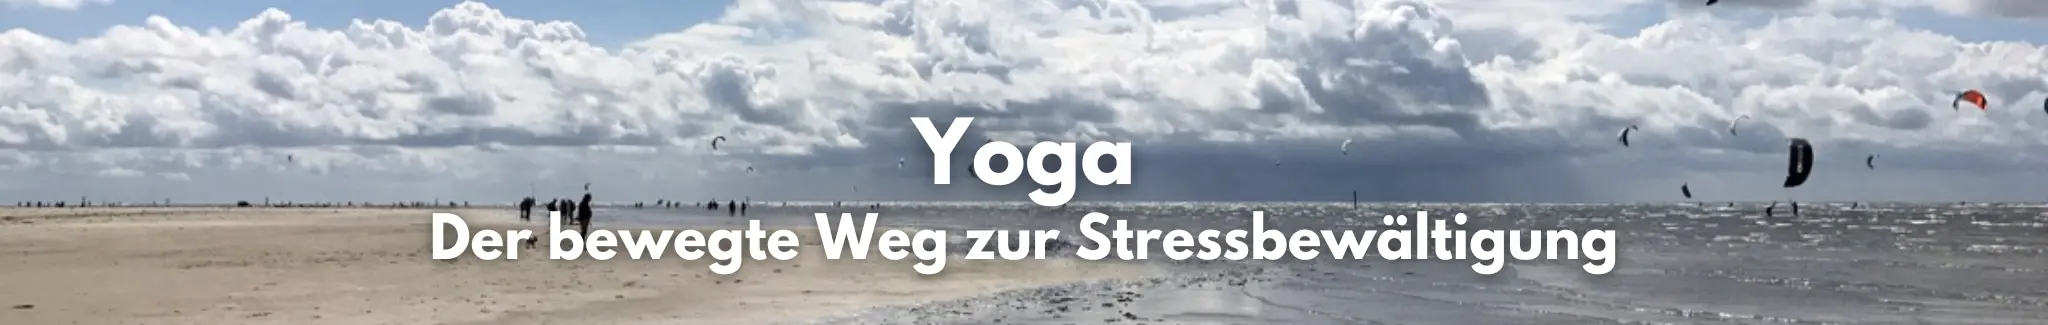 Yoga, der bewegte Weg zur Stressbewältigung